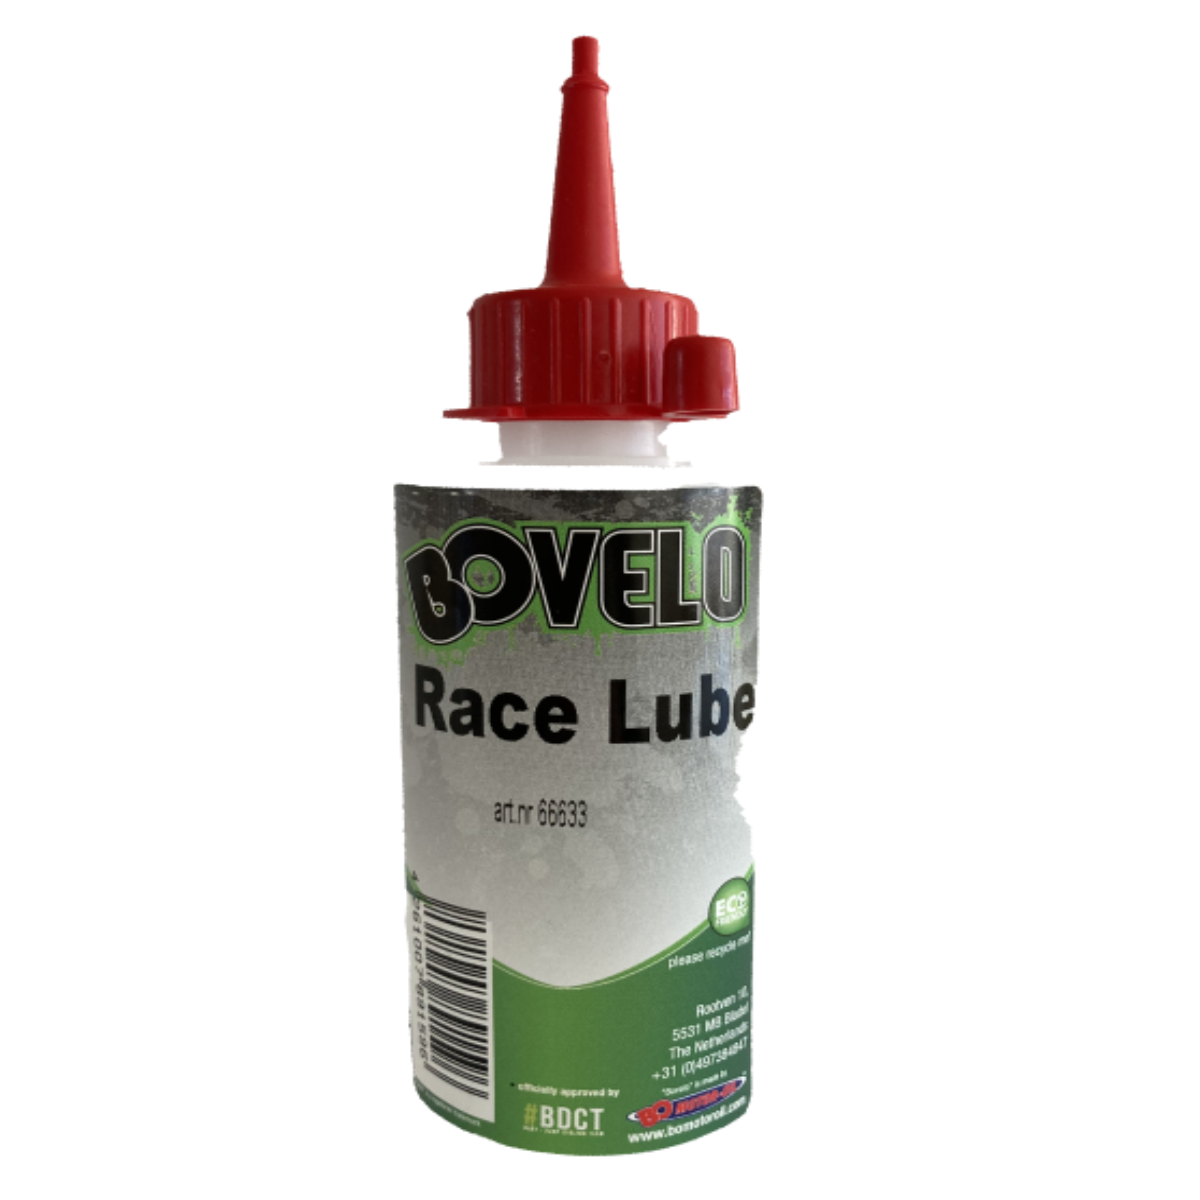 Bovelo Race Lube 110 ml